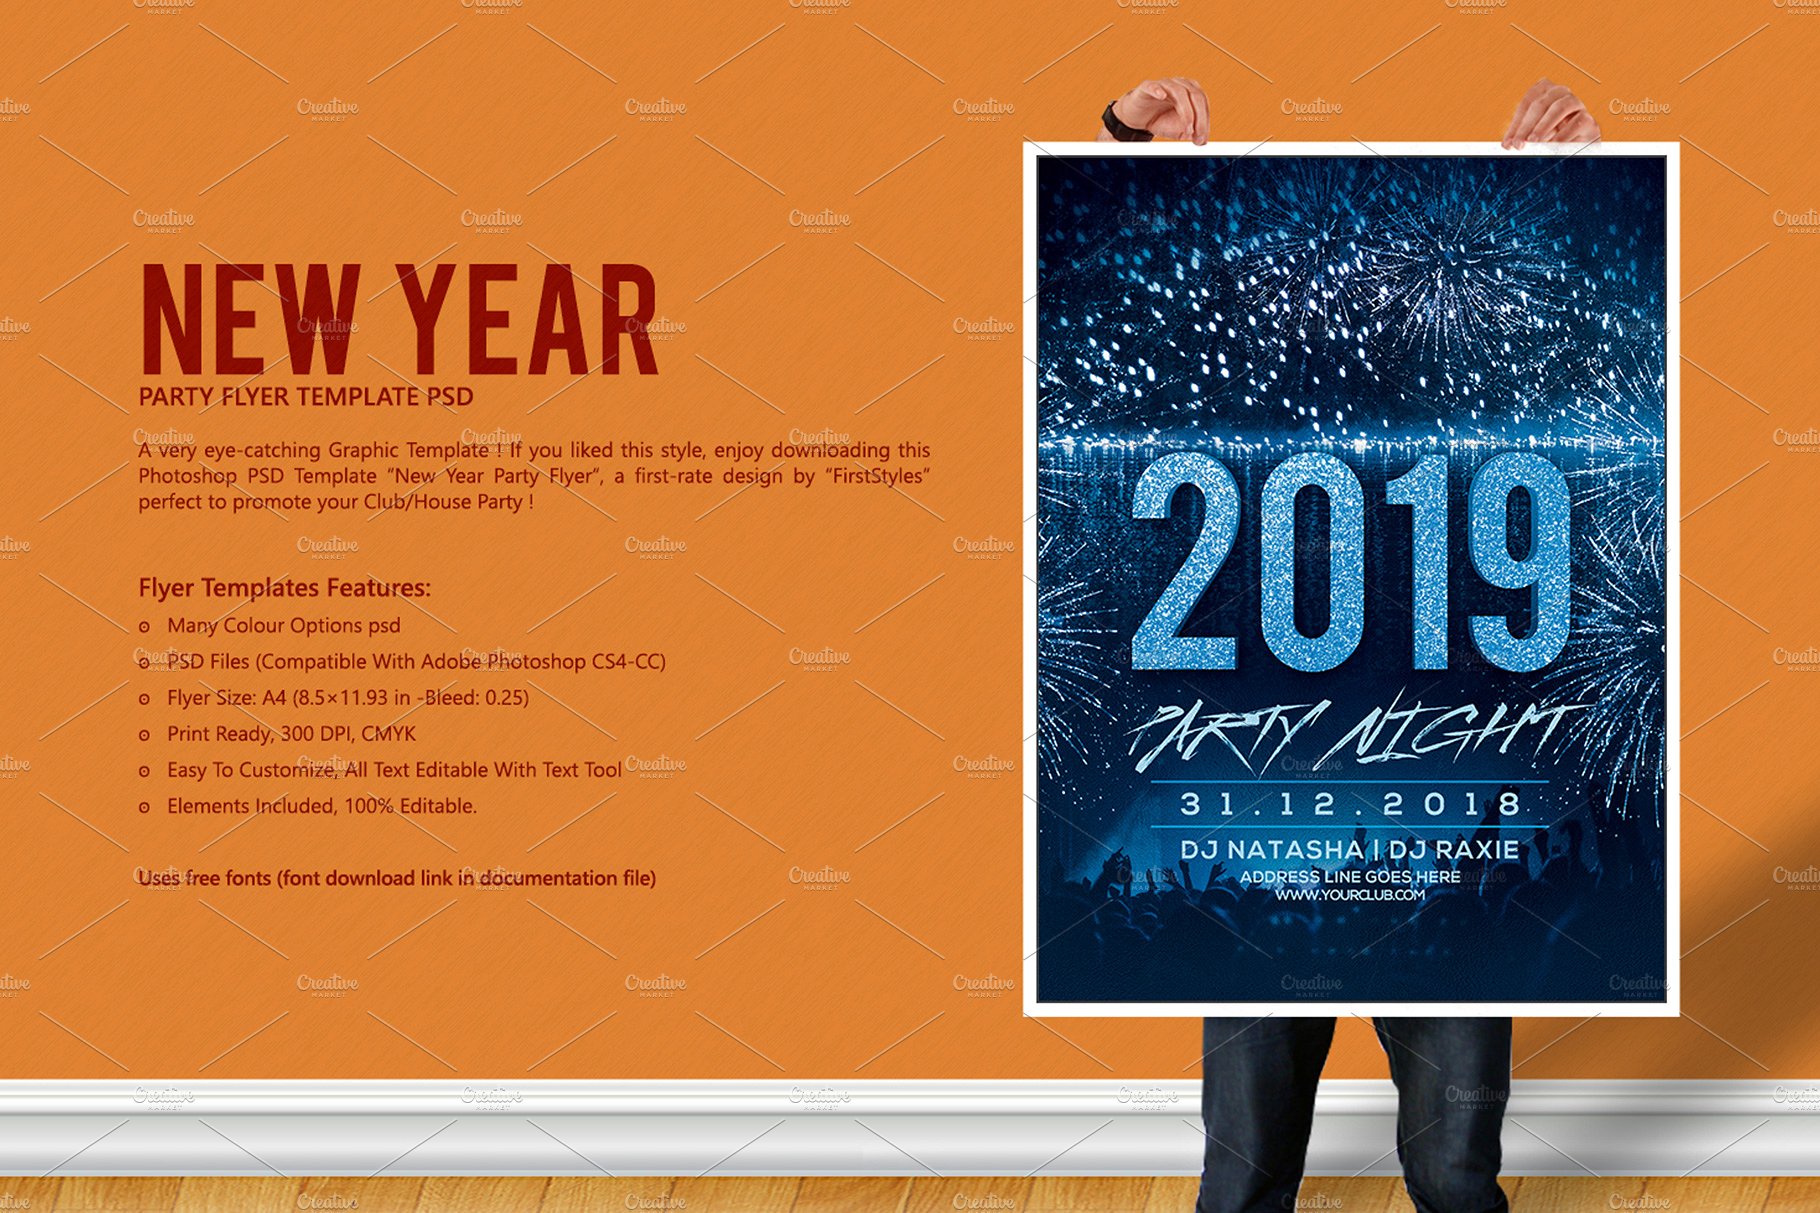 2019年新年前夜派对海报模板 [psd]插图